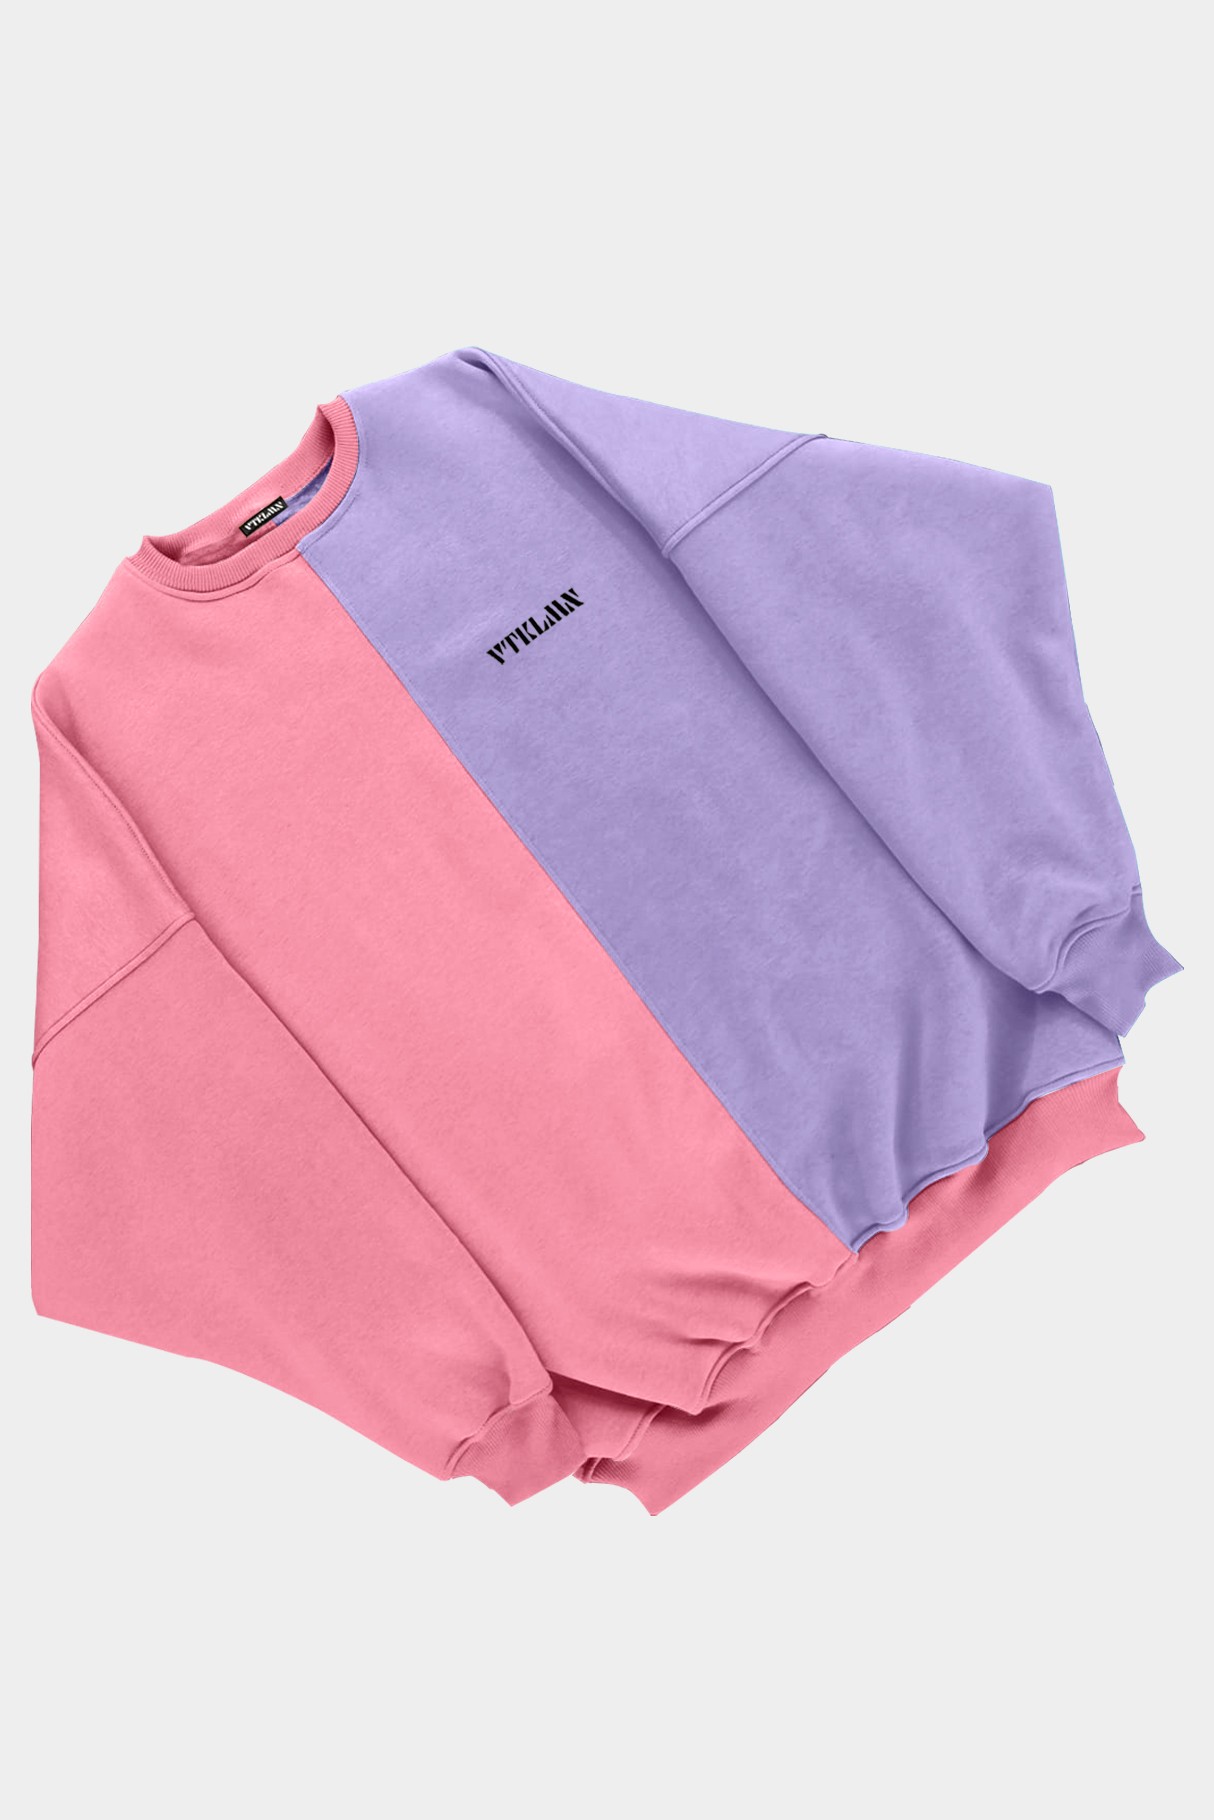  Kadın Erkek Renkli Sweatshirt - Pembe Lila